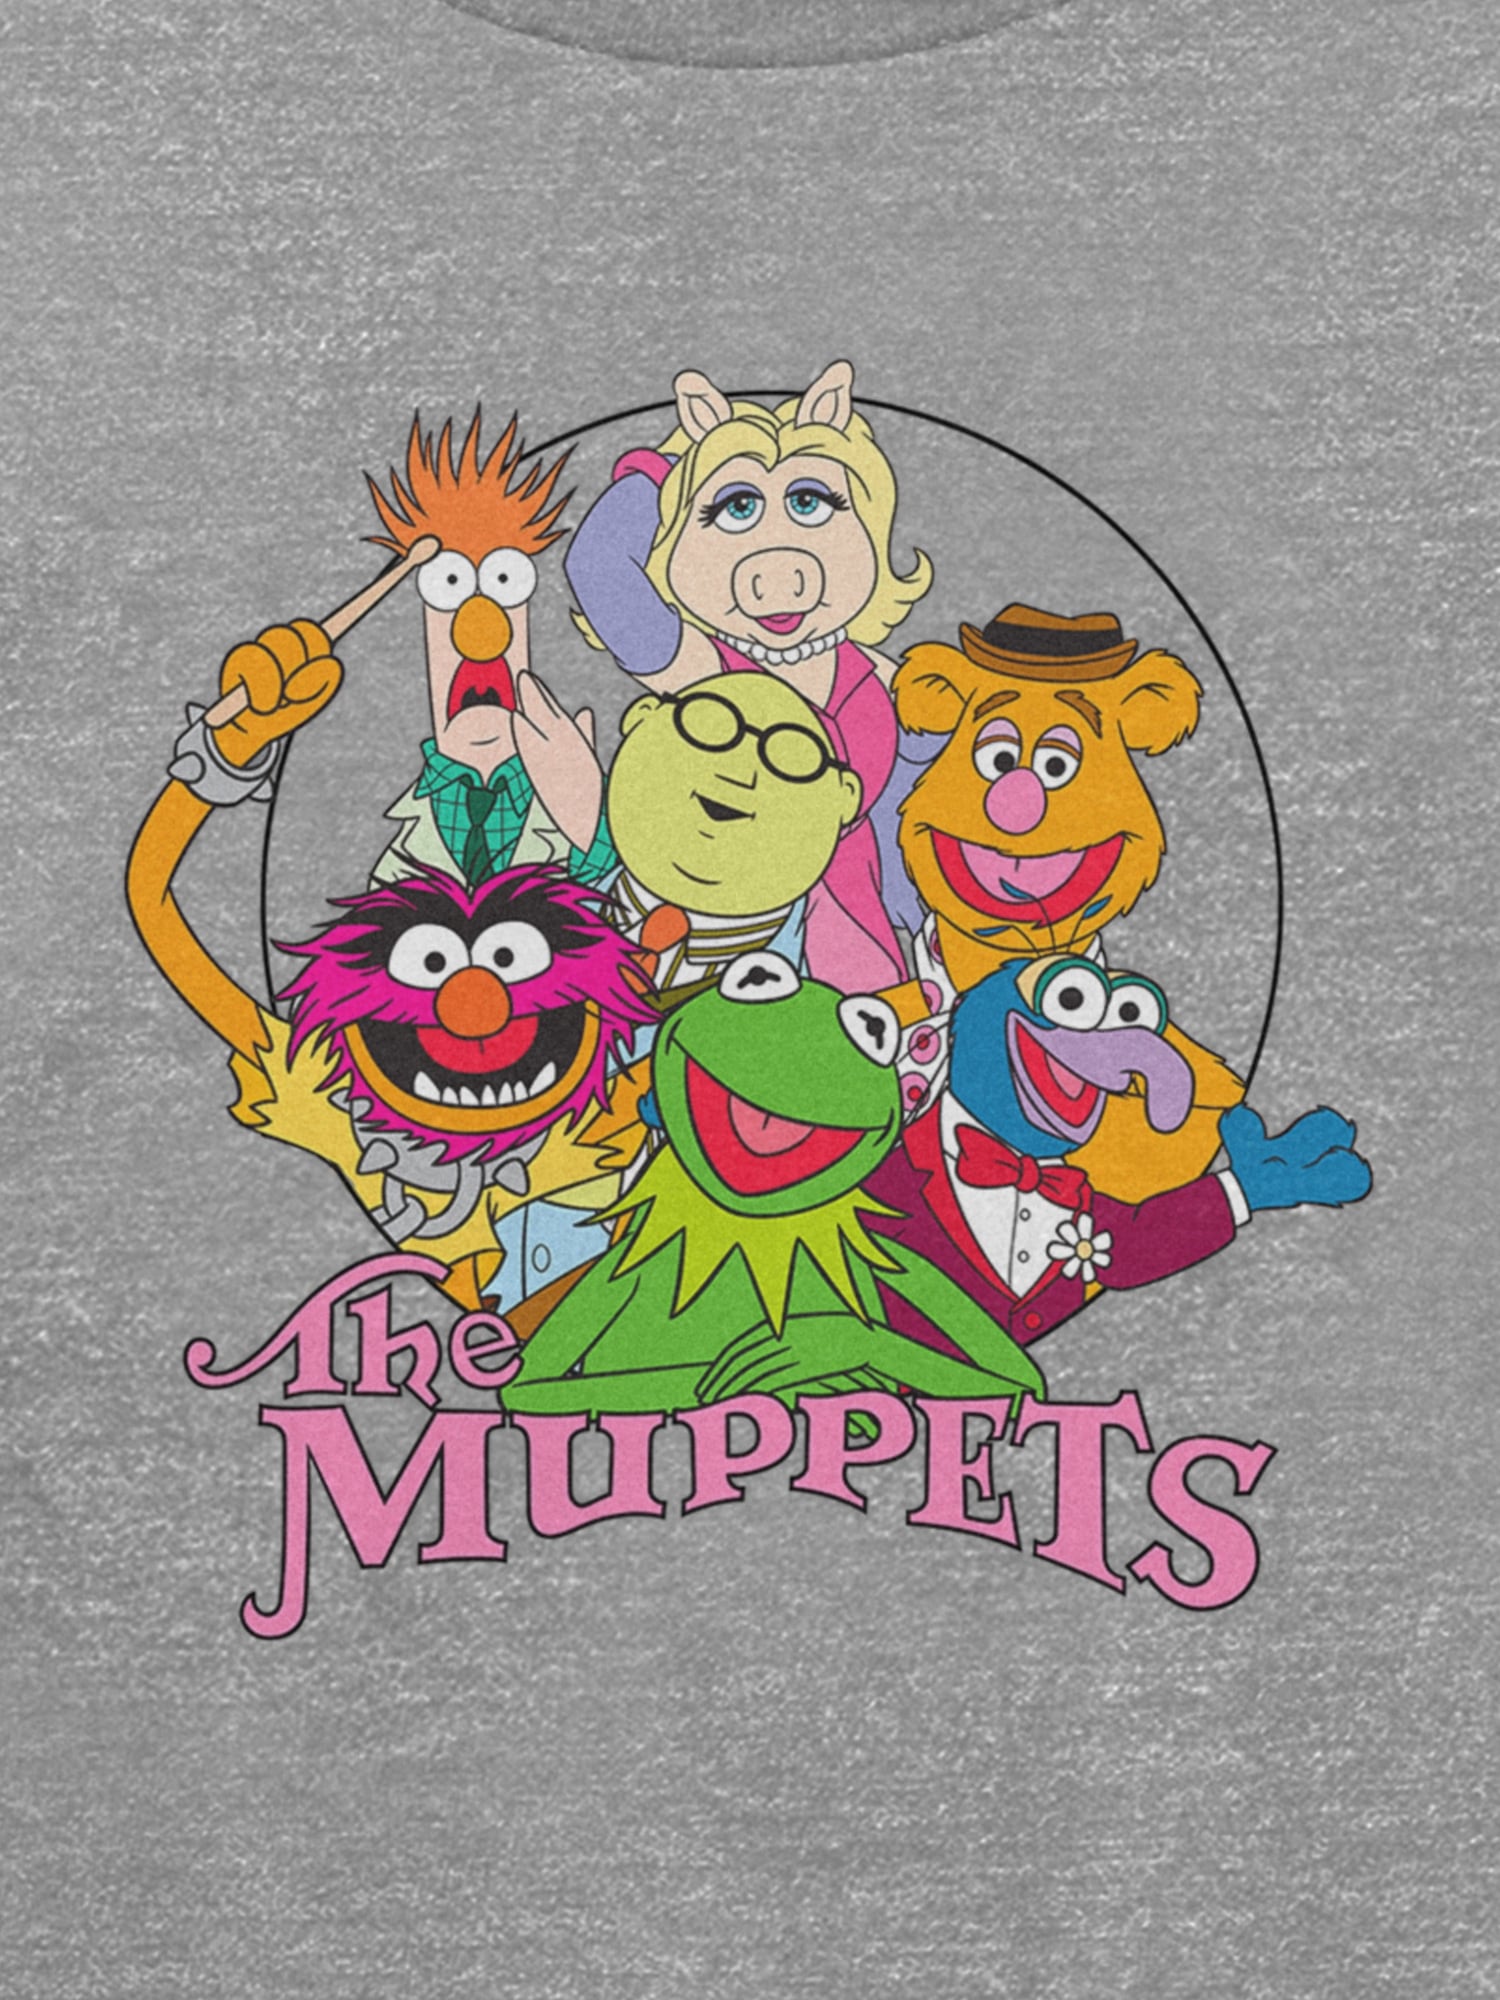 갭 Kids Muppets Graphic Crew Neck Sweatshirt